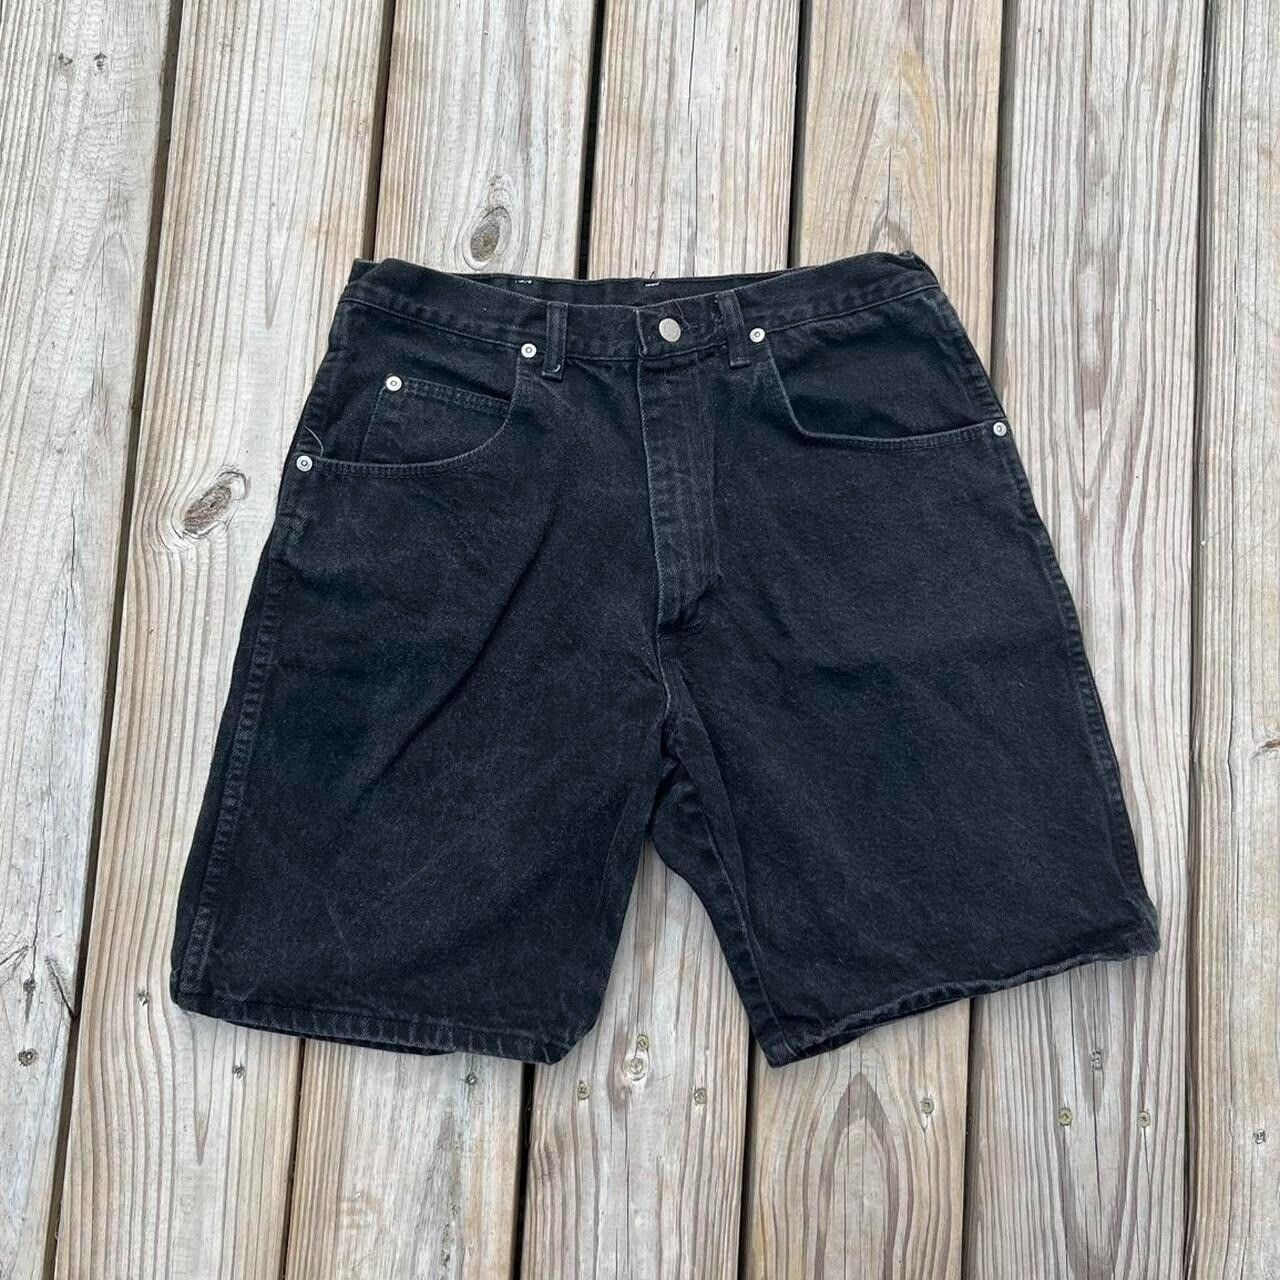 Vintage Vintage Wrangler Jorts Black denim shorts made in USA Size US 32 / EU 48 - 1 Preview